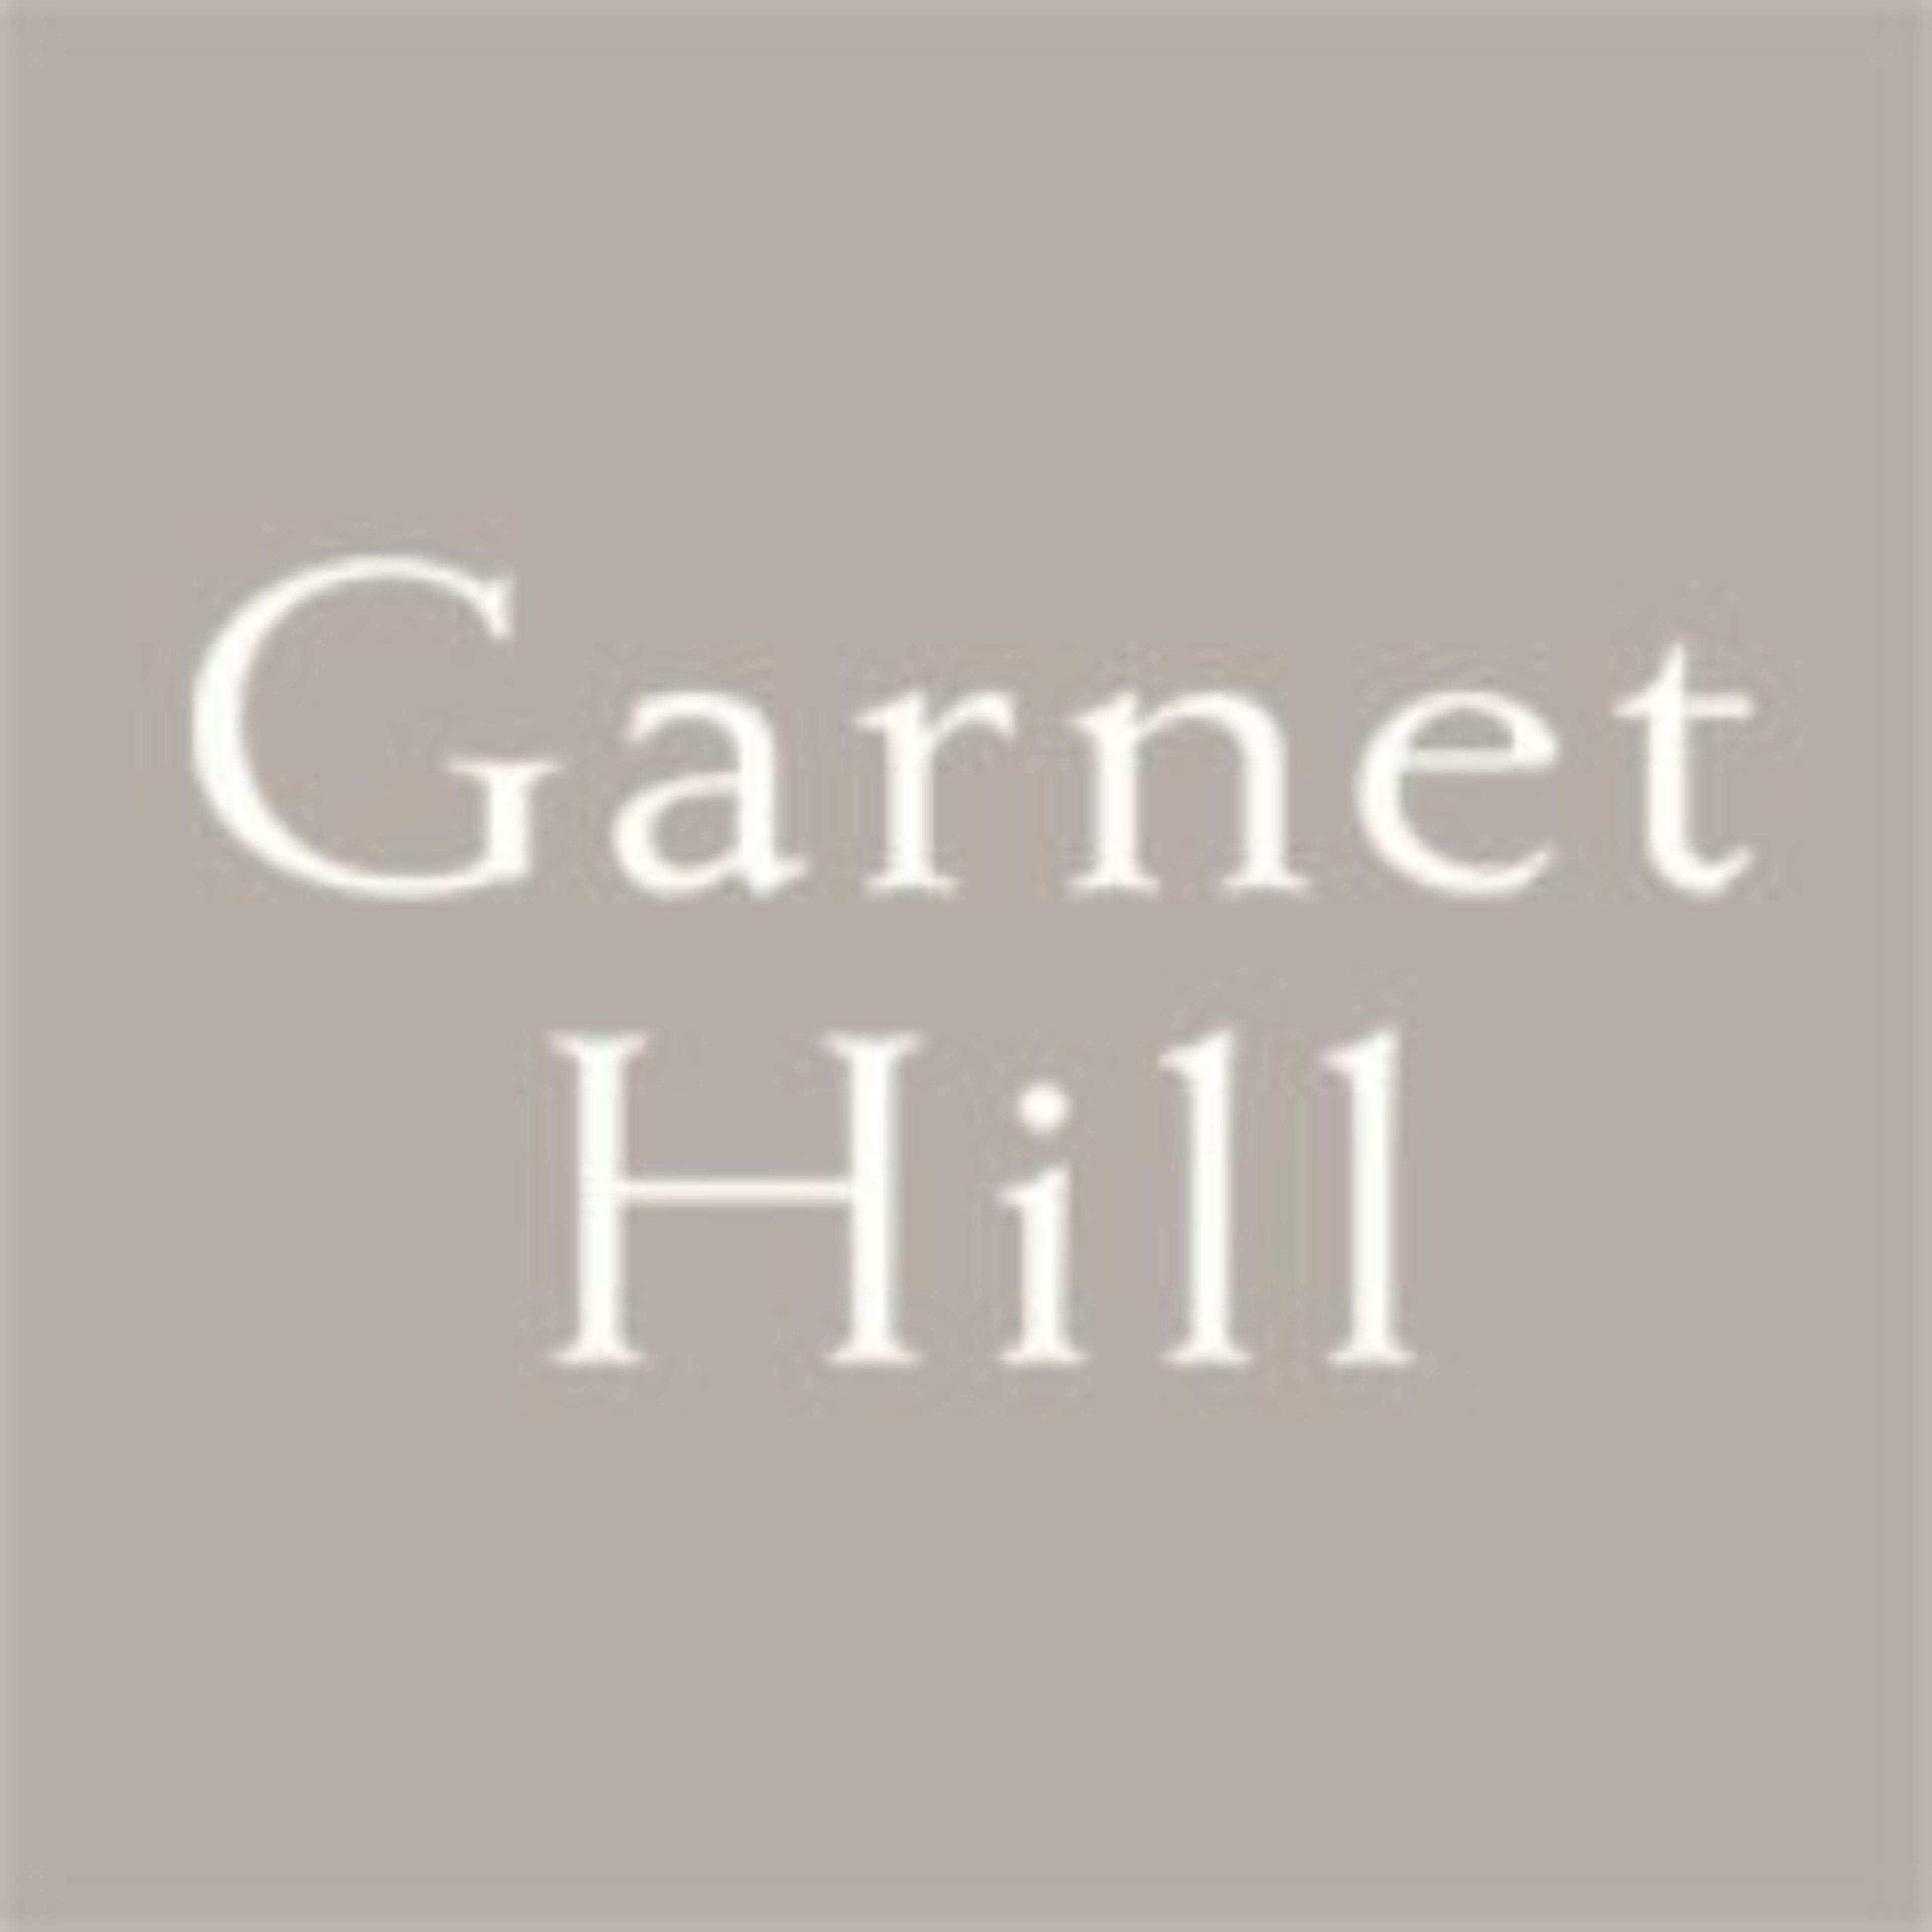 Garnet Hill Code